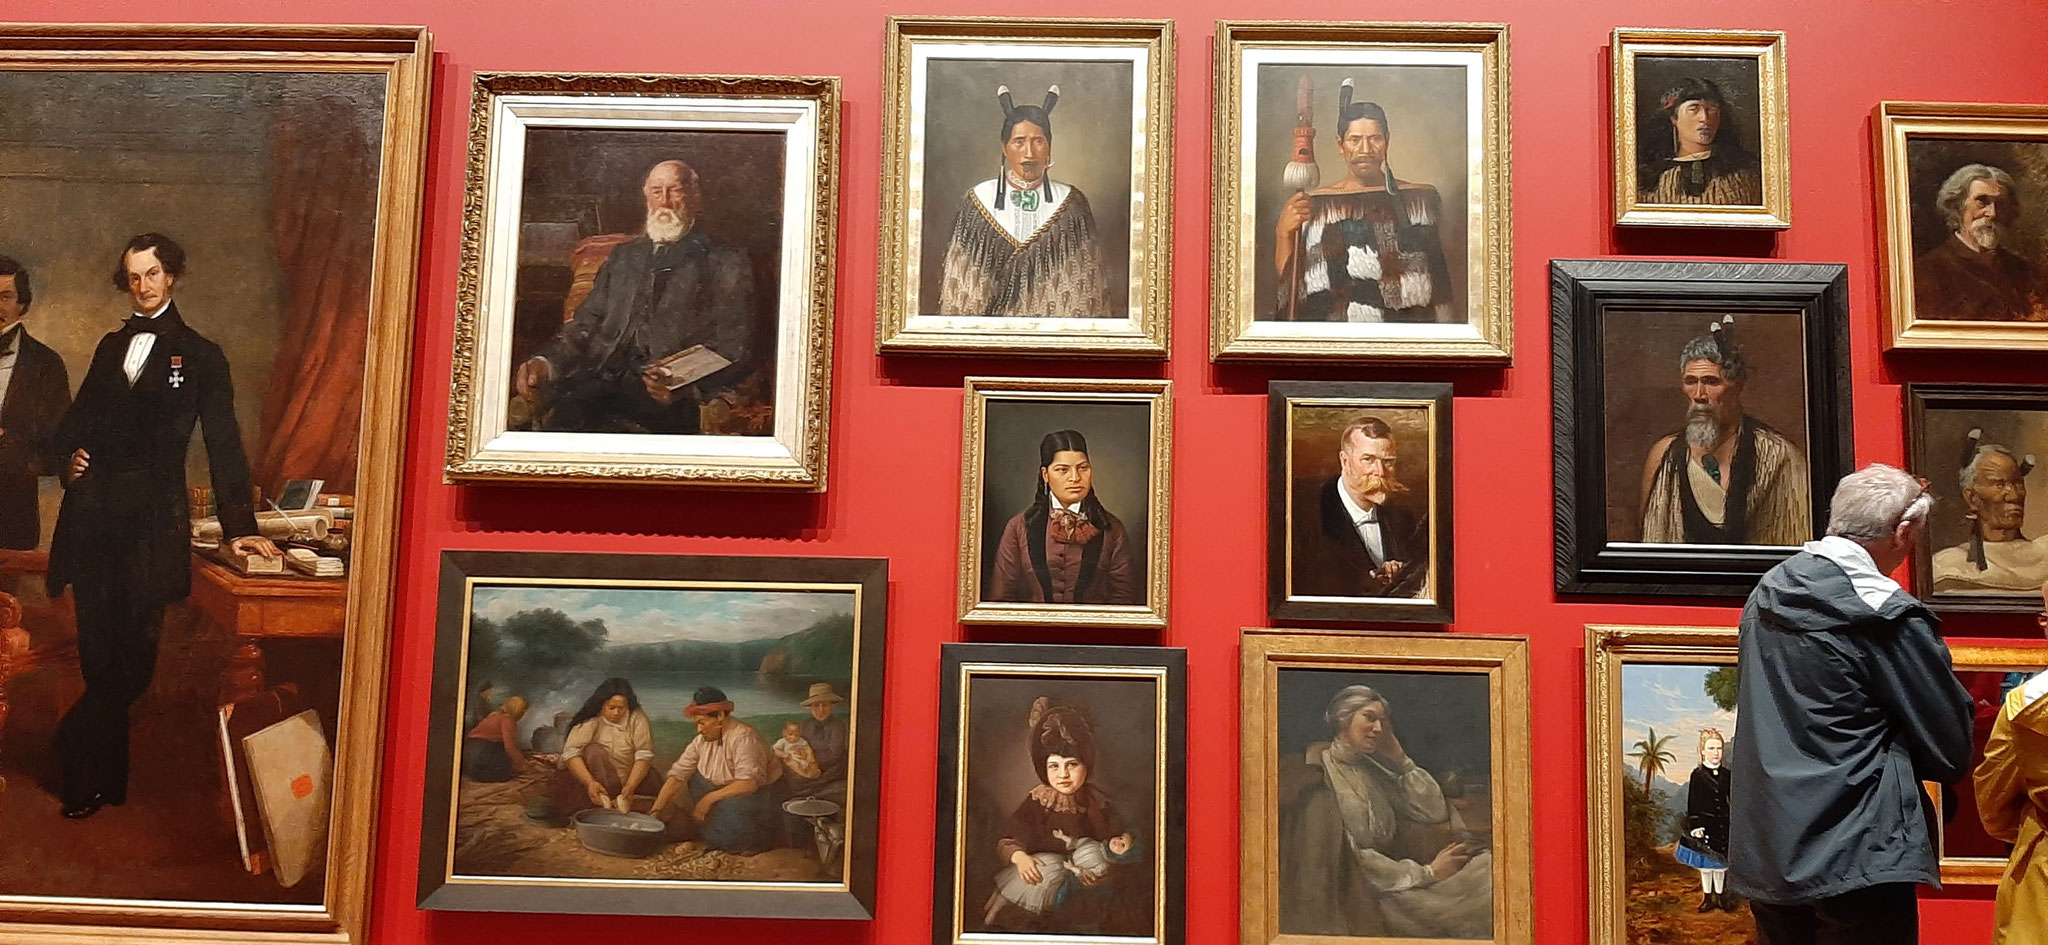 pared del museo con retratos 